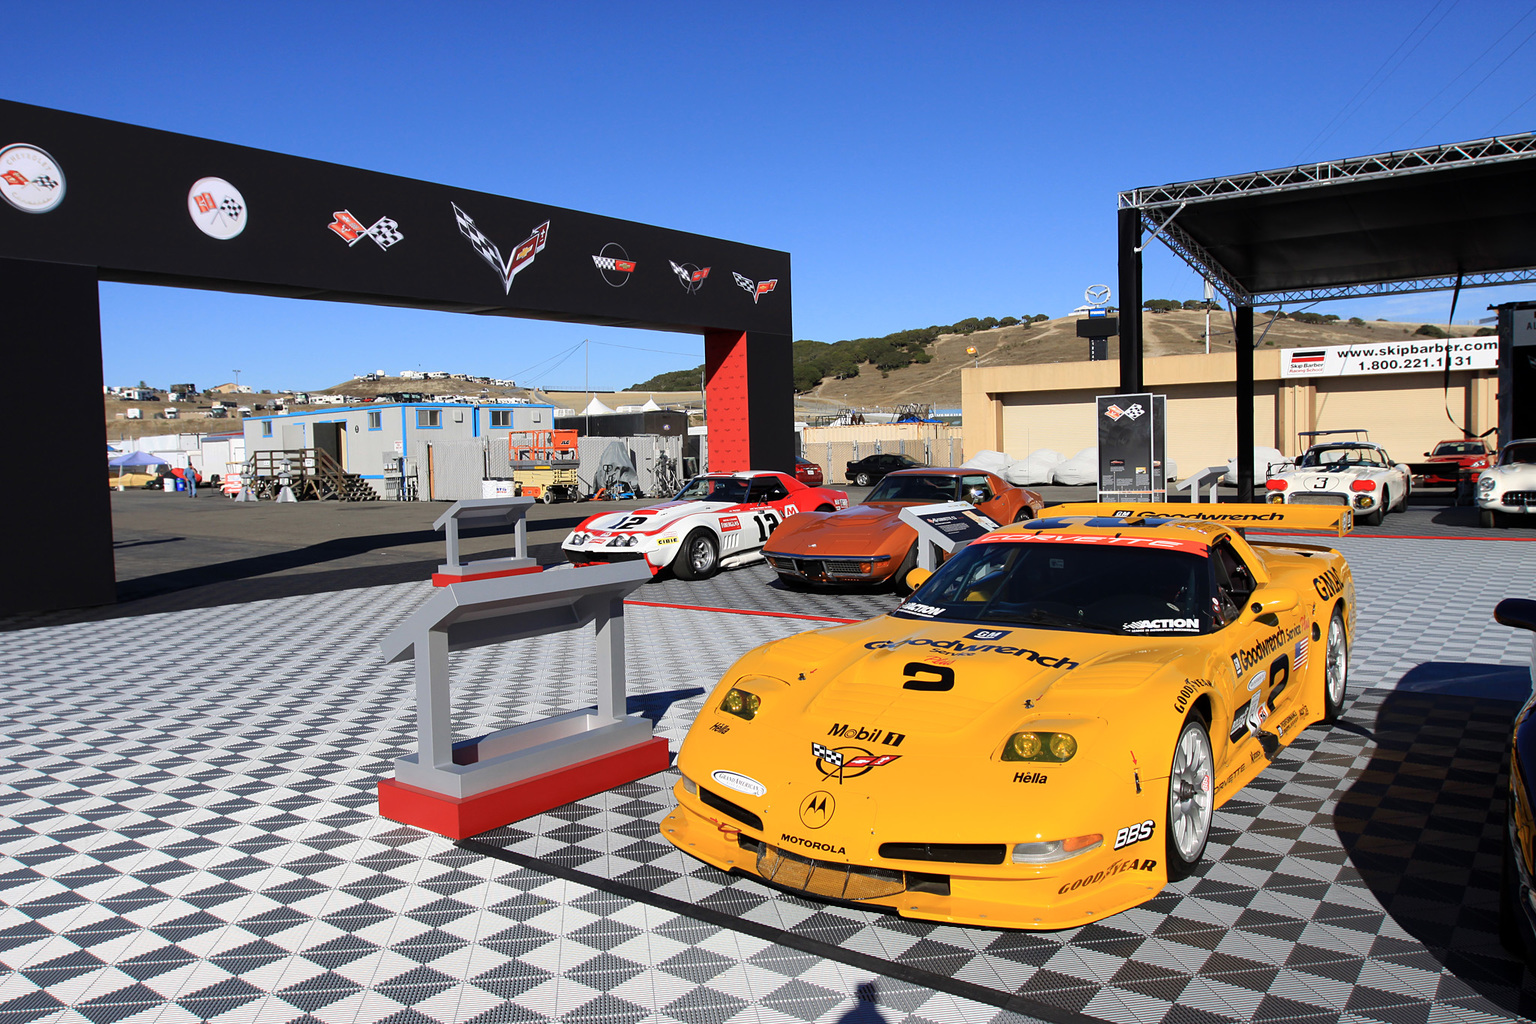 2013 Rolex Monterey Motorsports Reunion